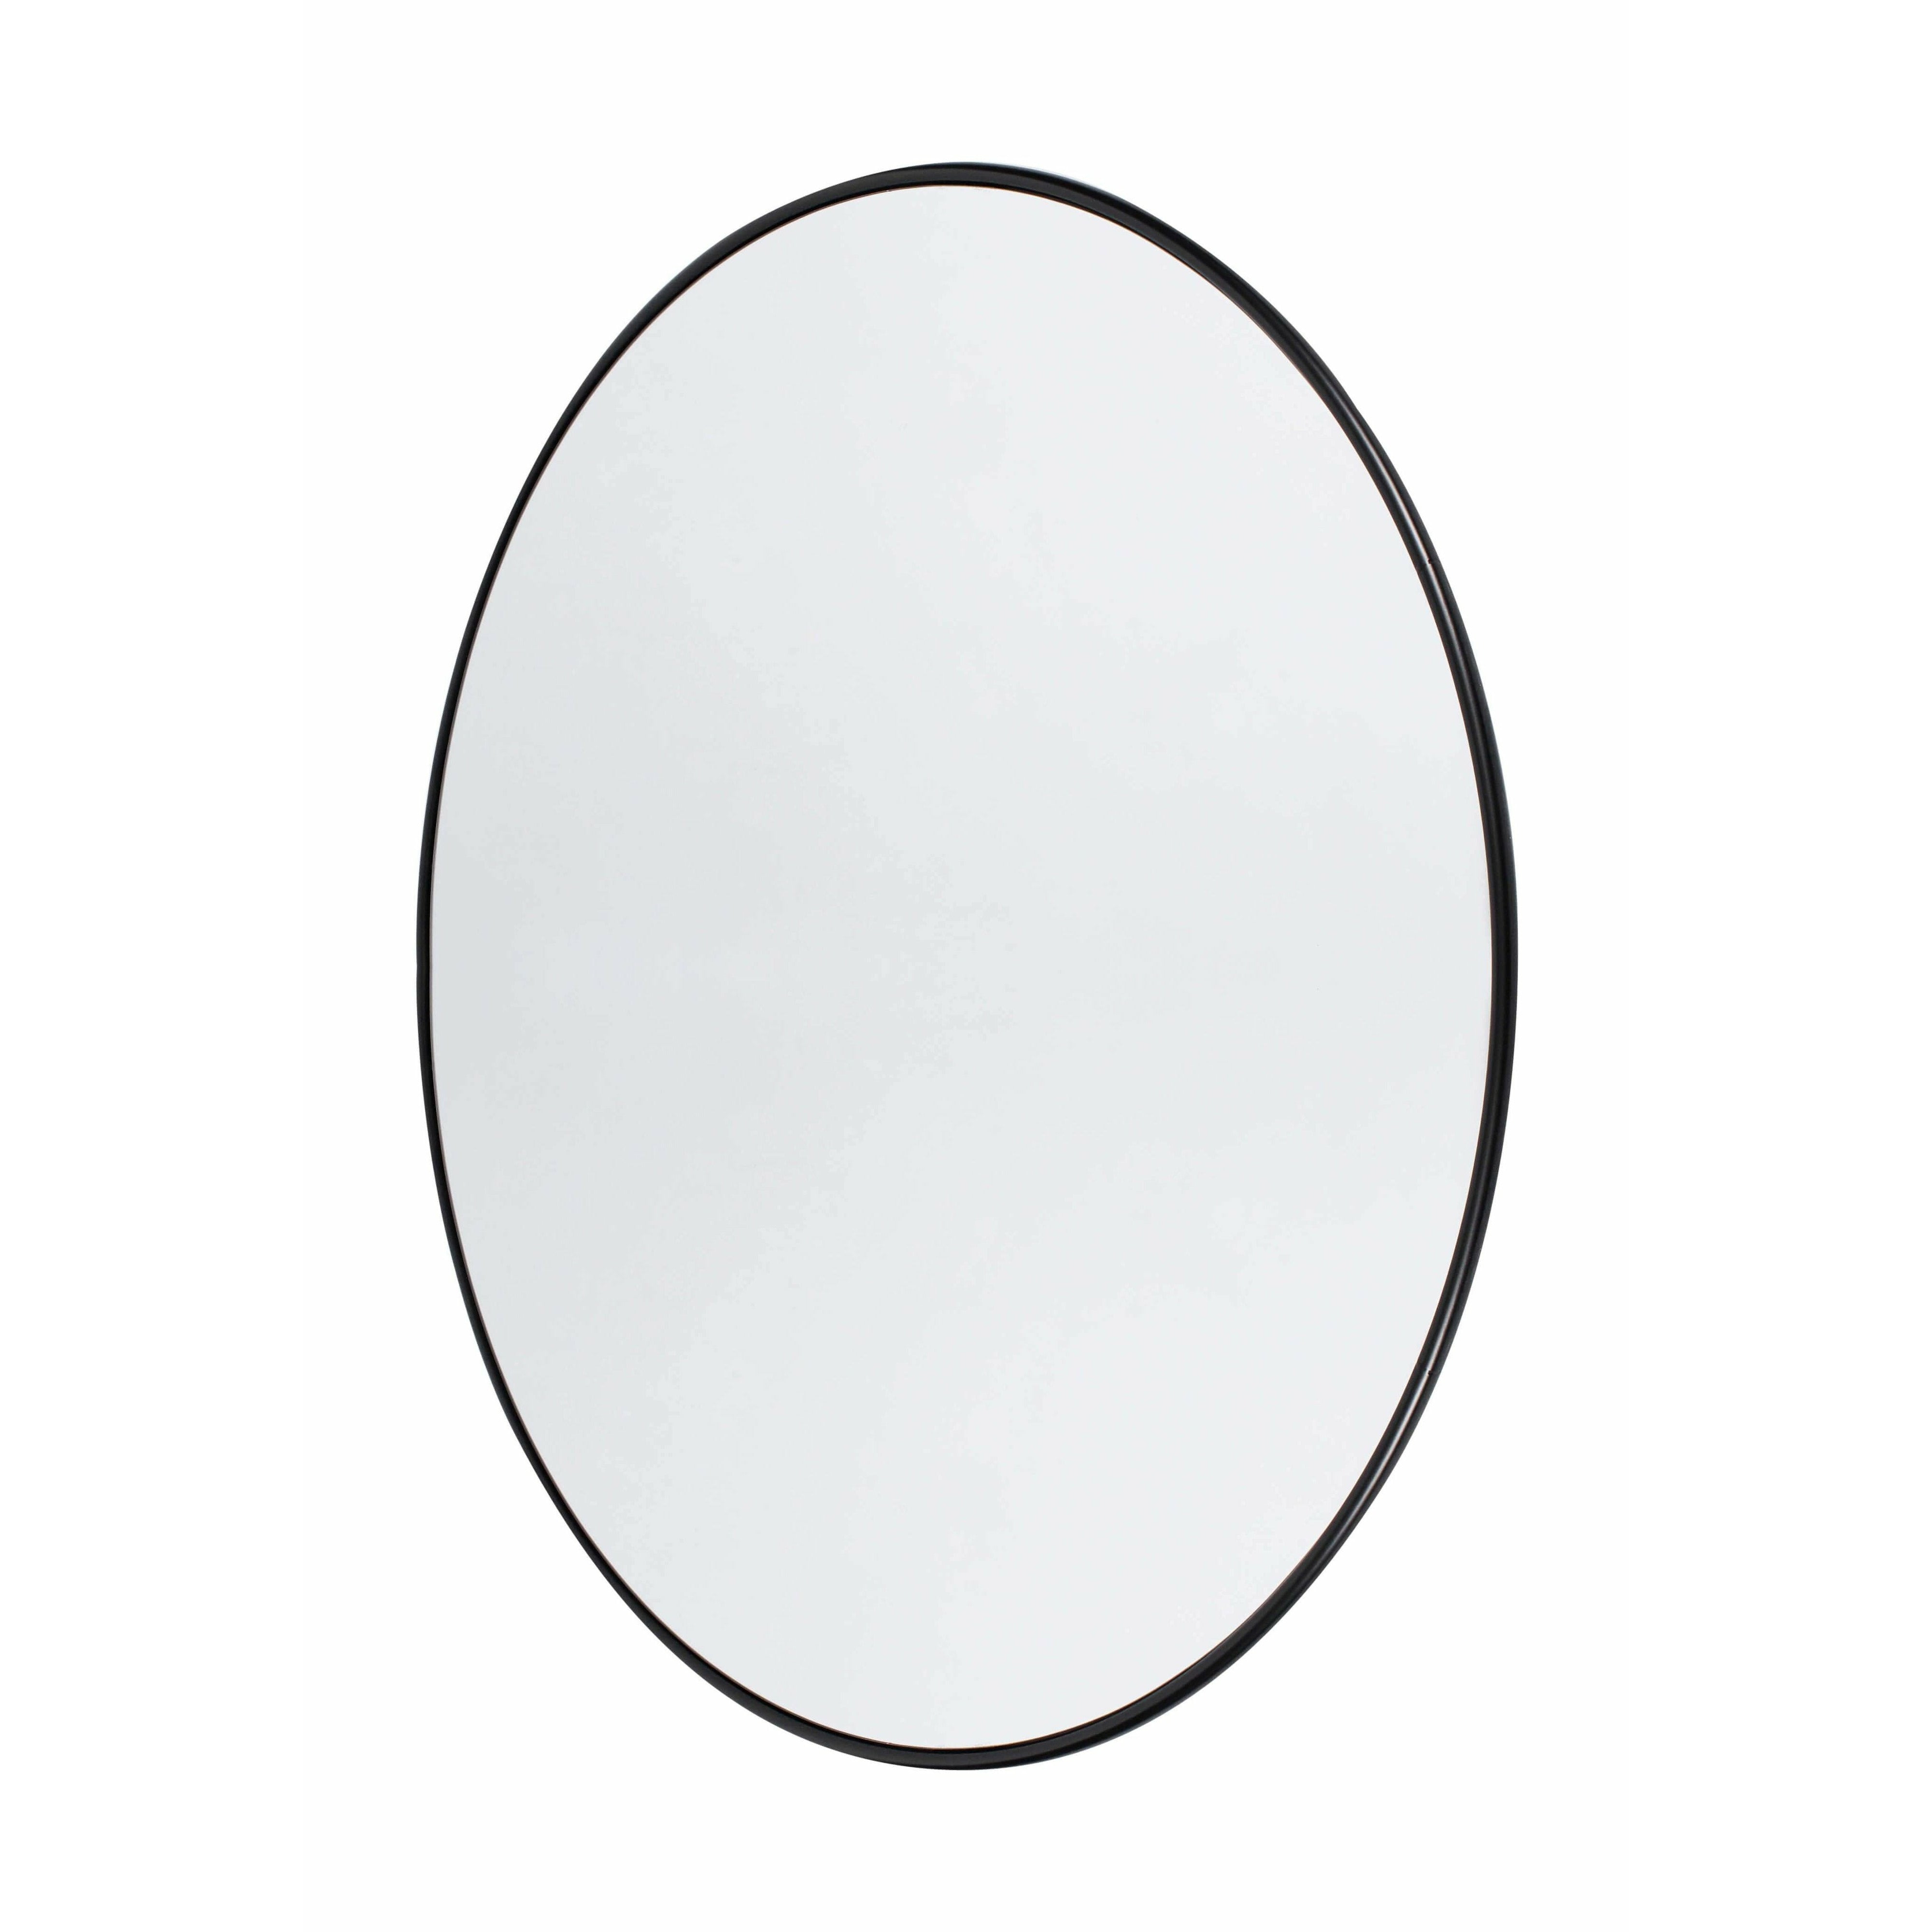 Muubs Copenhagen Mirror Round Black, 110 cm